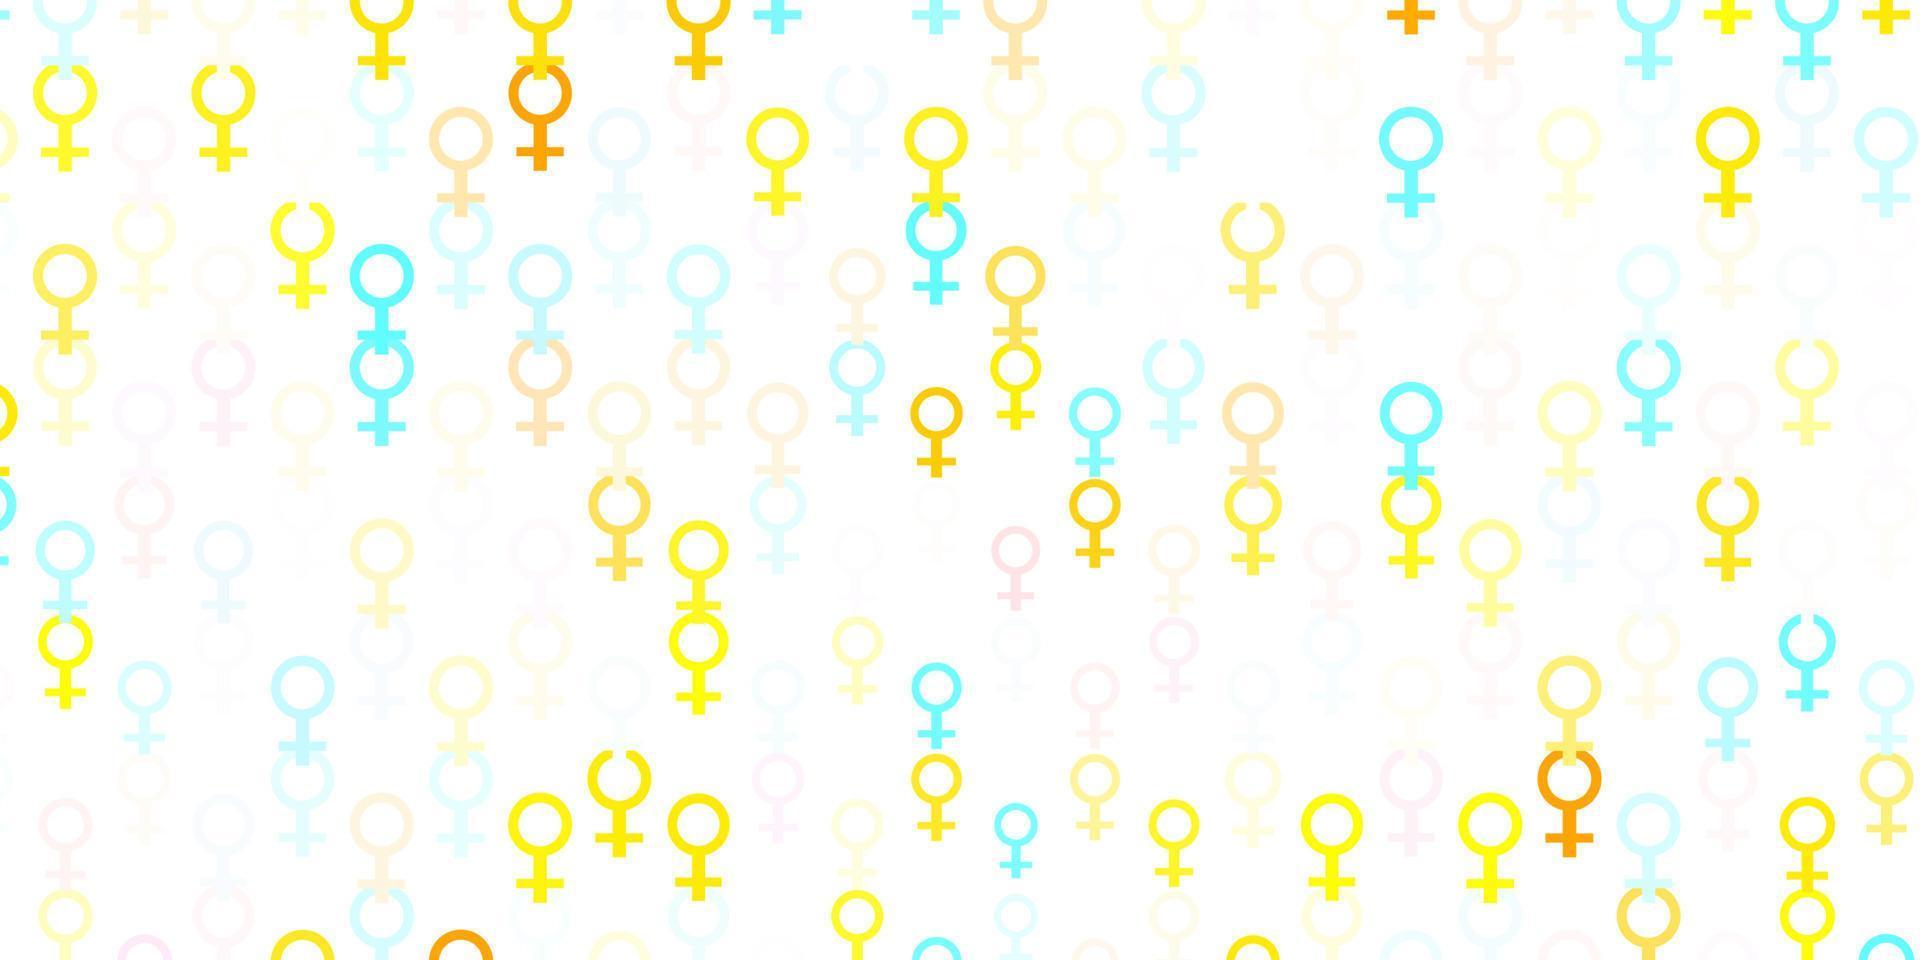 ljusblå, gul vektor textur med kvinnors rättigheter symboler.